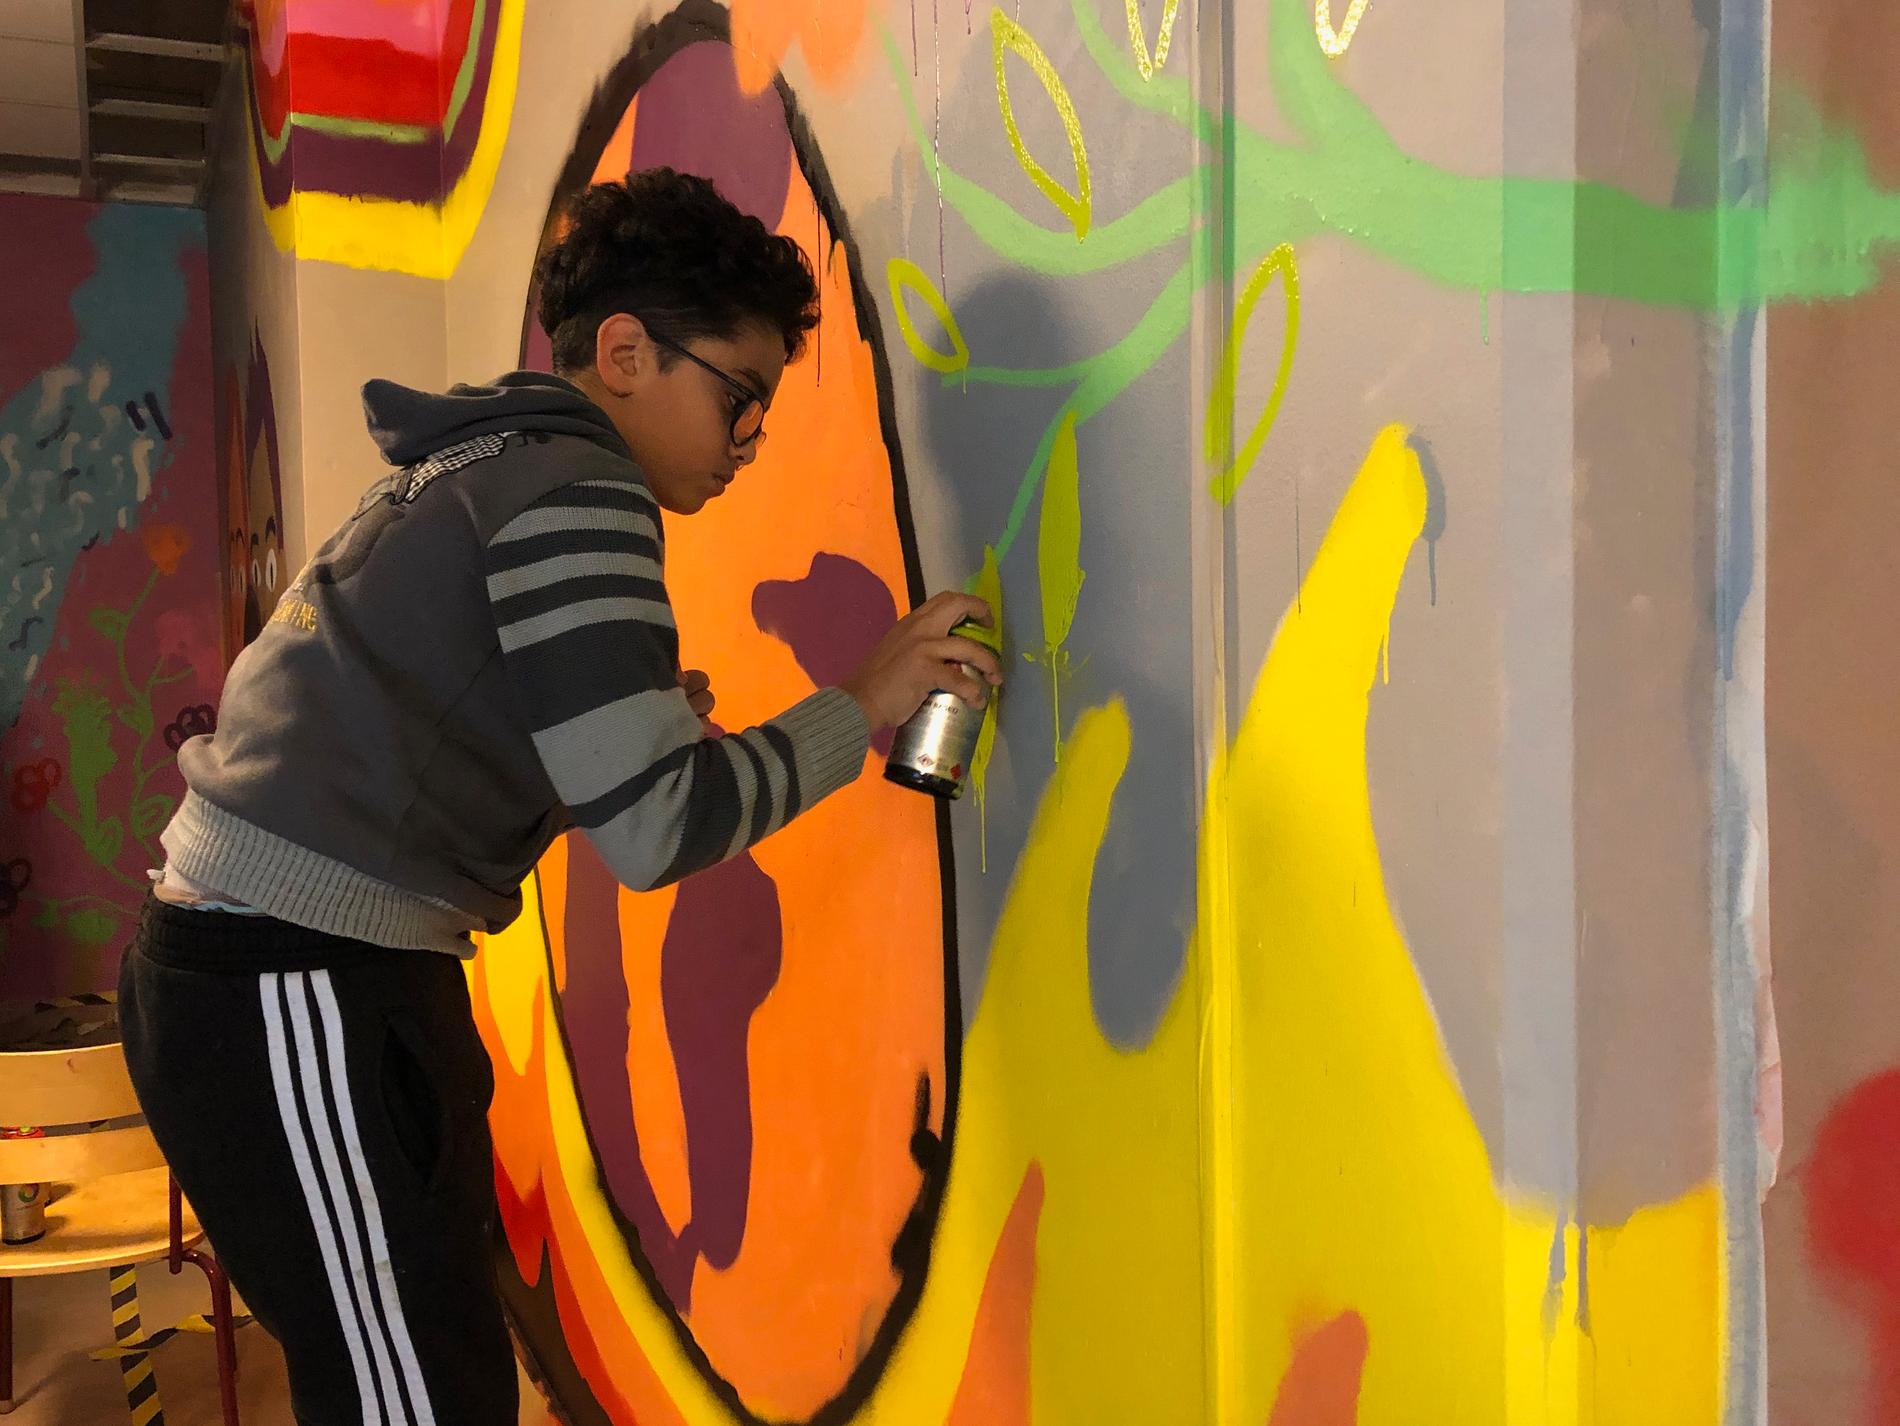 Mohammed Refai sprayar noggrant på gul färg på muralmålningen.